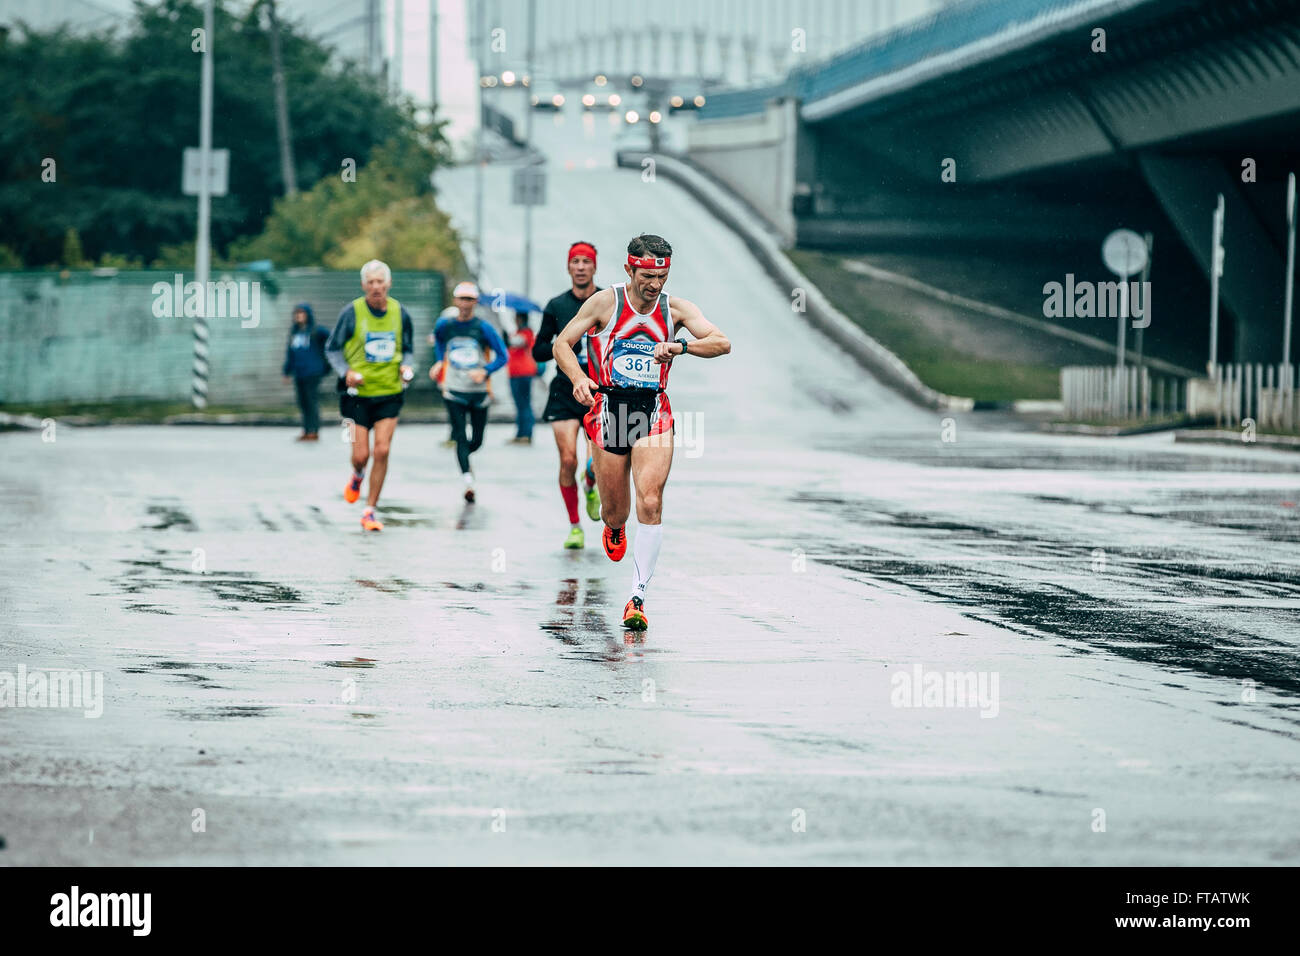 Omsk, Russie - 20 septembre 2015 : athlète ressemble au résultat d'heures de marche pendant le marathon international de Sibérie Banque D'Images